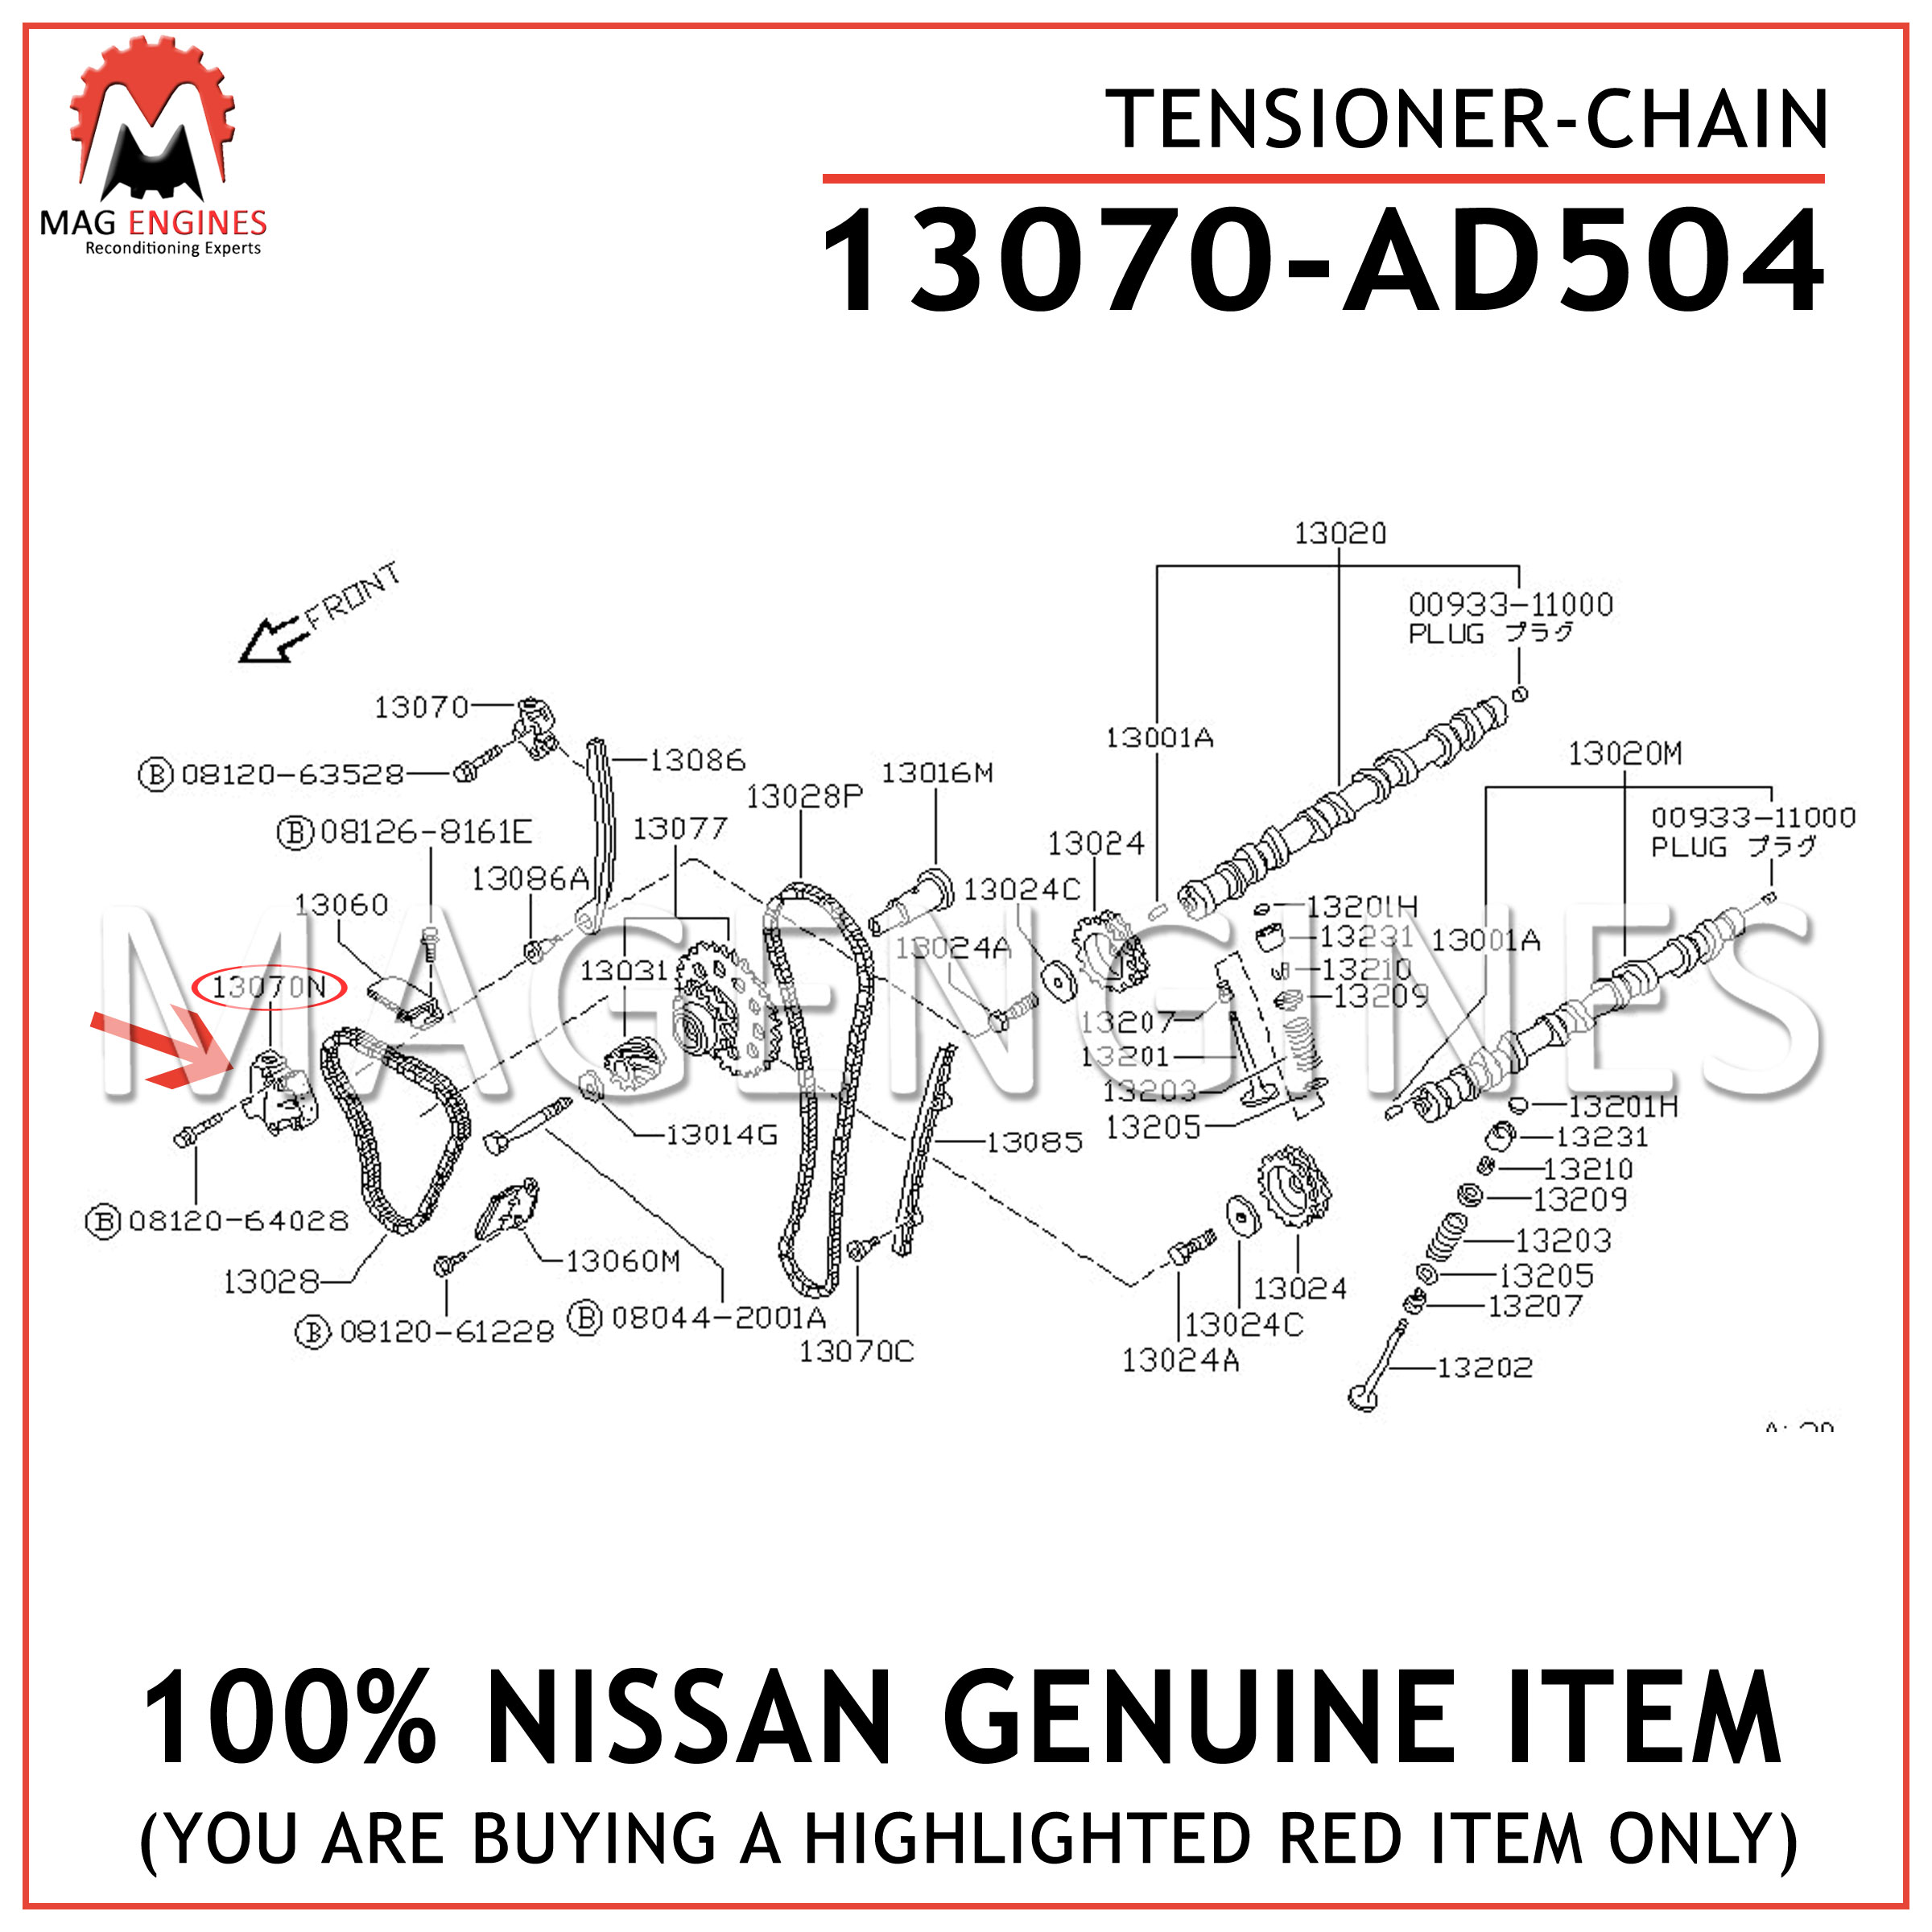 13070AD504 Genuine Nissan TENSIONER-CHAIN 13070-AD504 